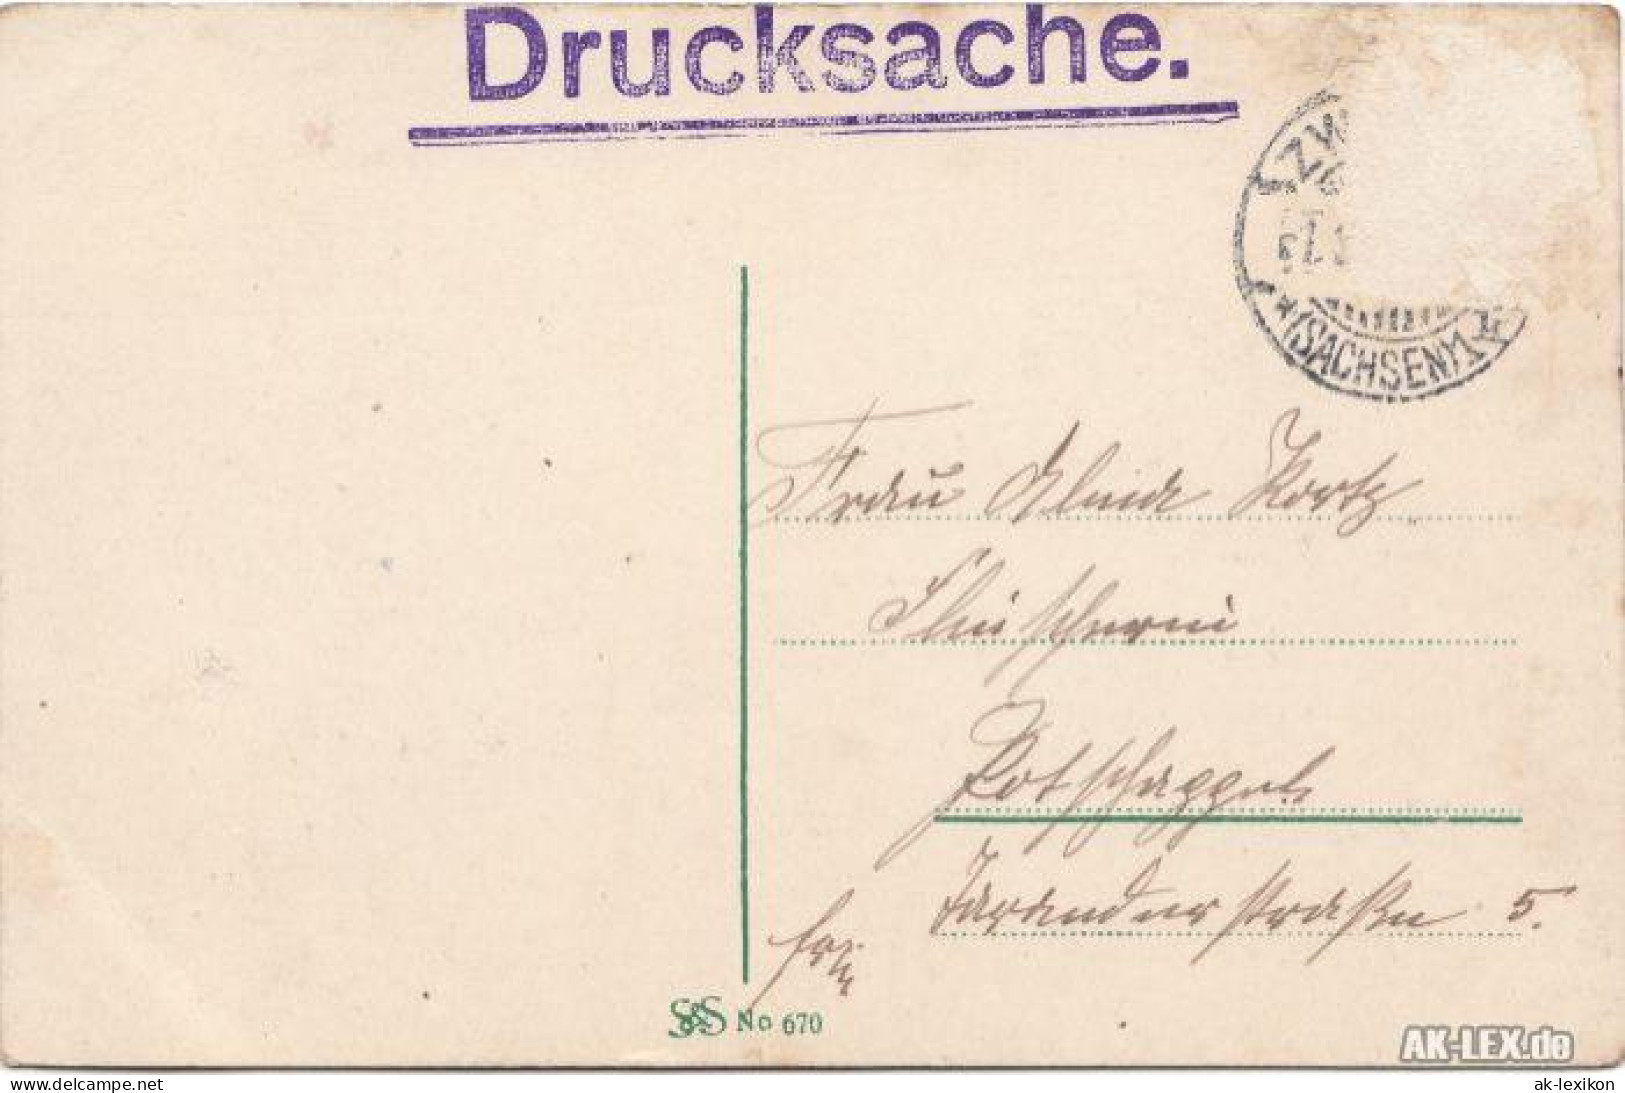 Glauchau Blick Auf Die Gräfl. Schönburg'schen Schlösser Und Wehrdicht C1918 1918 - Glauchau